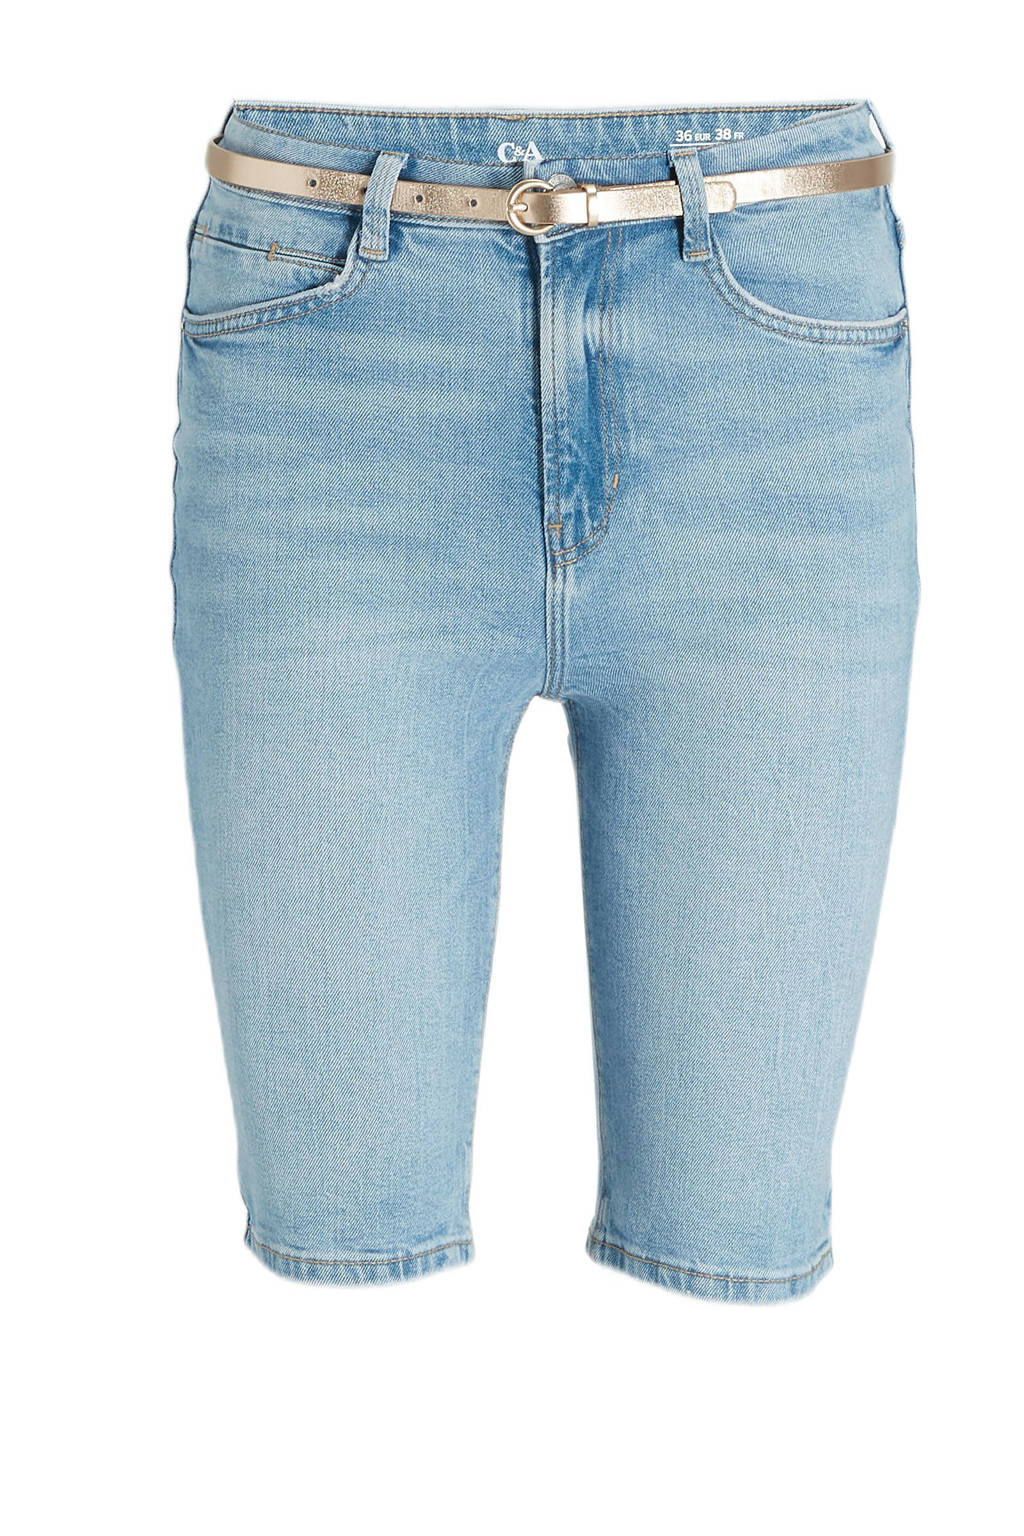 C&A high waist regular fit bermuda jeans light denim